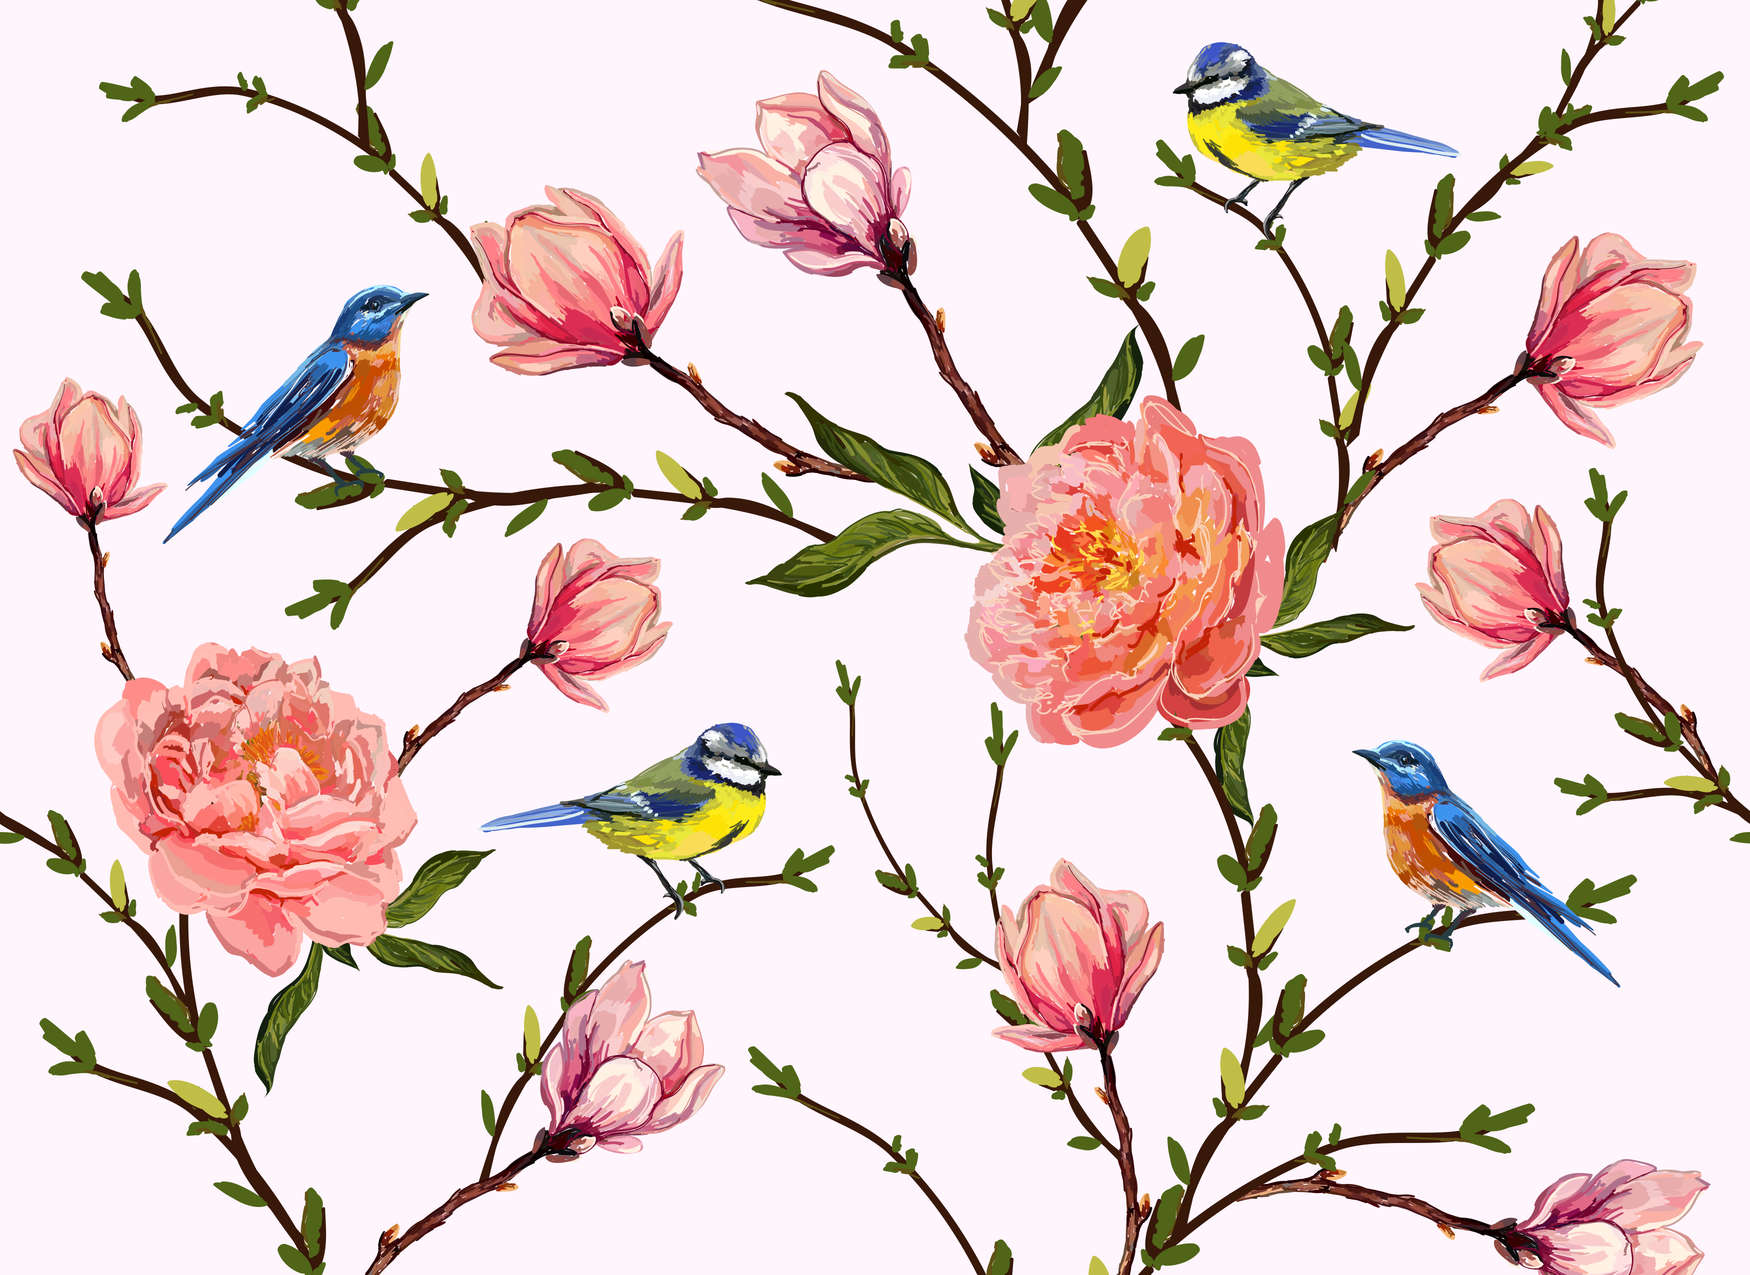             Papier peint oiseaux & fleurs minimaliste - gris, rose, vert
        